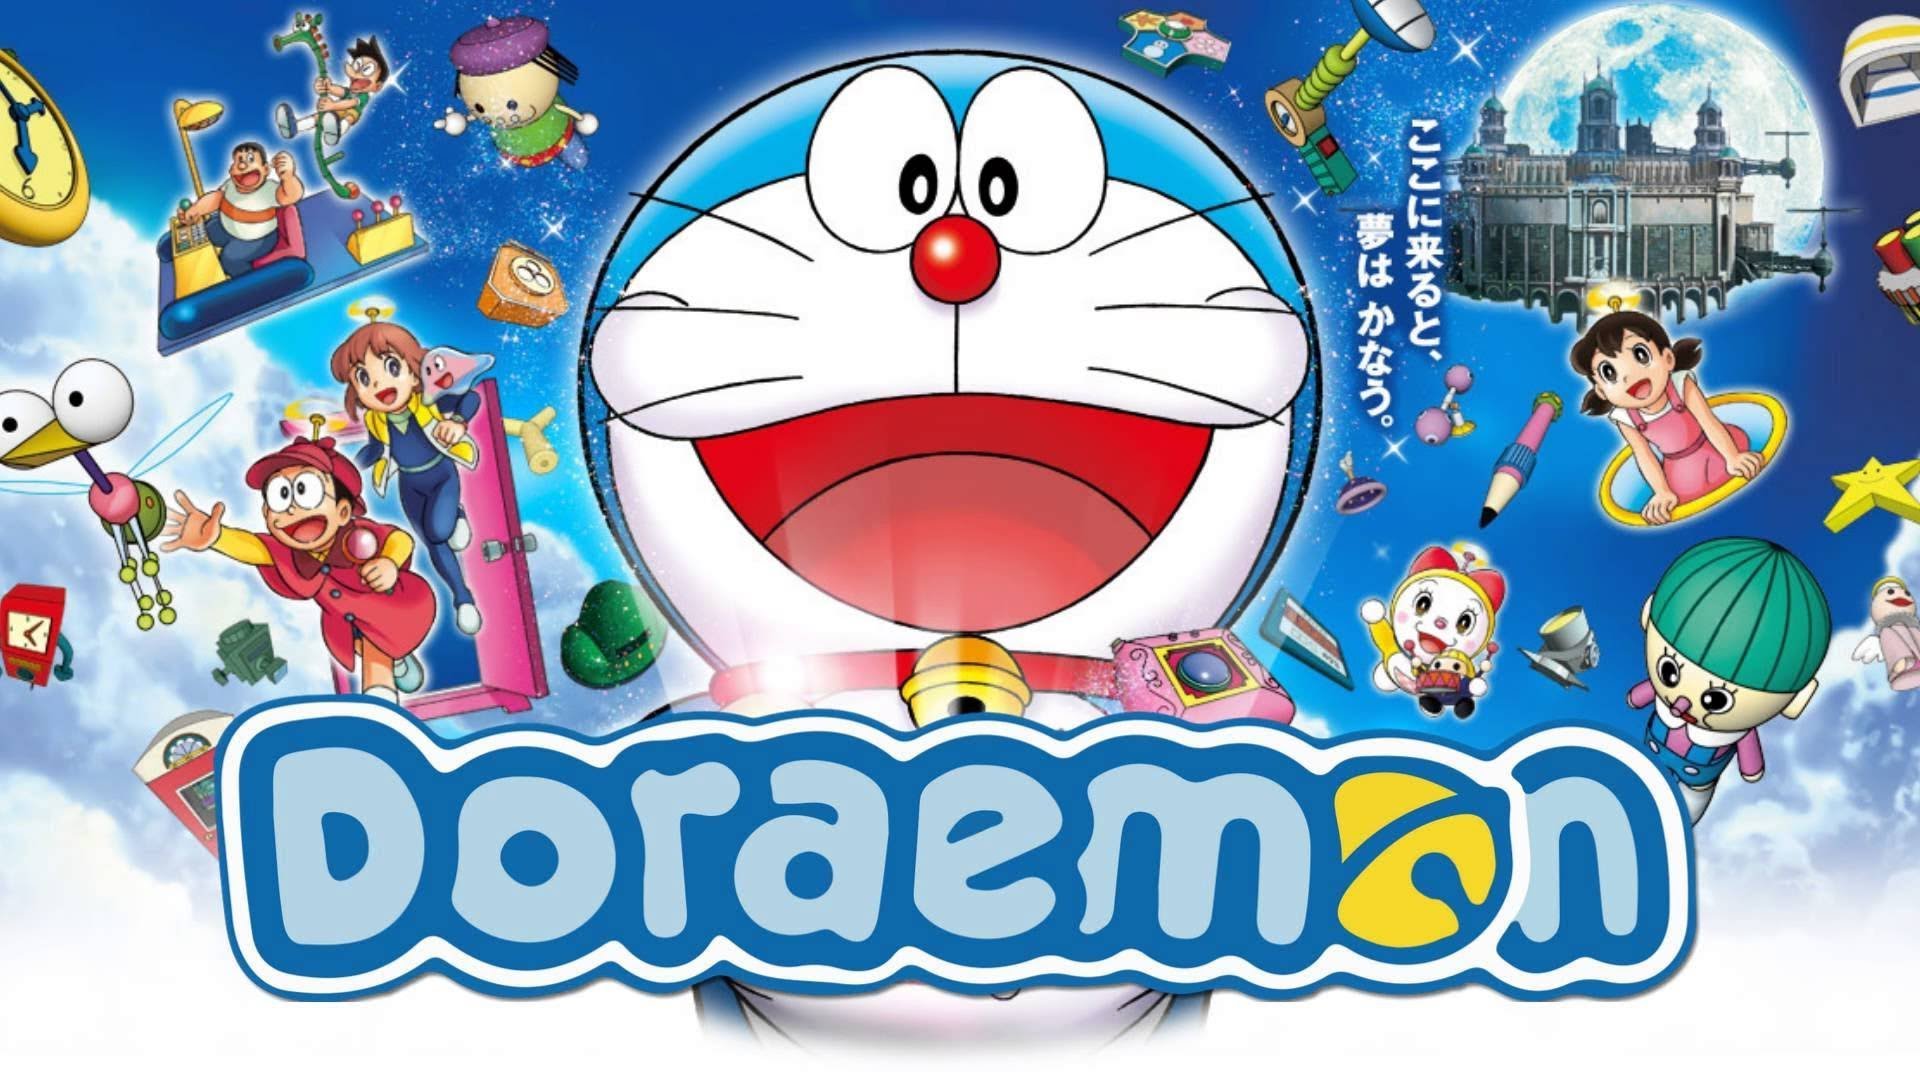 Doraemon Wonder Gun là một trong những món đồ chơi phổ biến nhất của người hâm mộ Doraemon. Nó được dùng để biến mọi thứ thành thực tế, rất thú vị đúng không? Hãy xem qua hình ảnh về Doraemon Wonder Gun và cùng khám phá thế giới huyền bí mà nó đem lại.